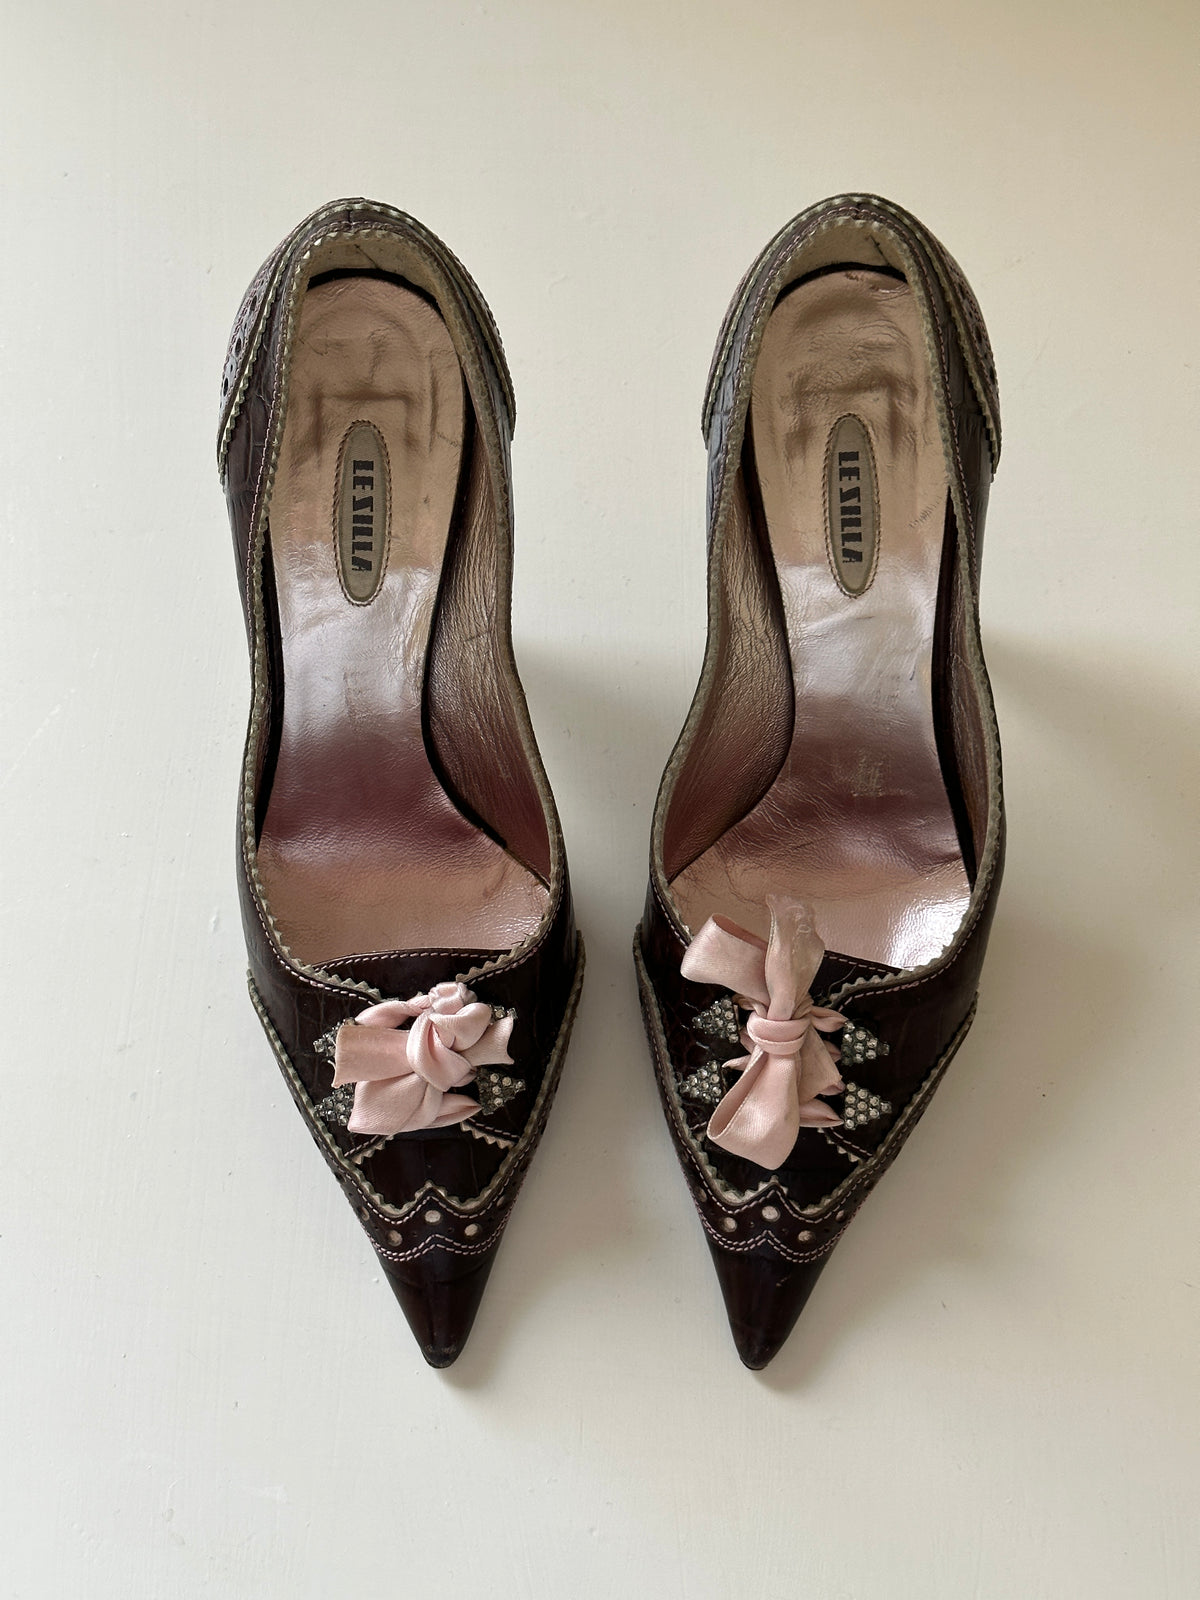 Vintage Italian Bow Heels (36)